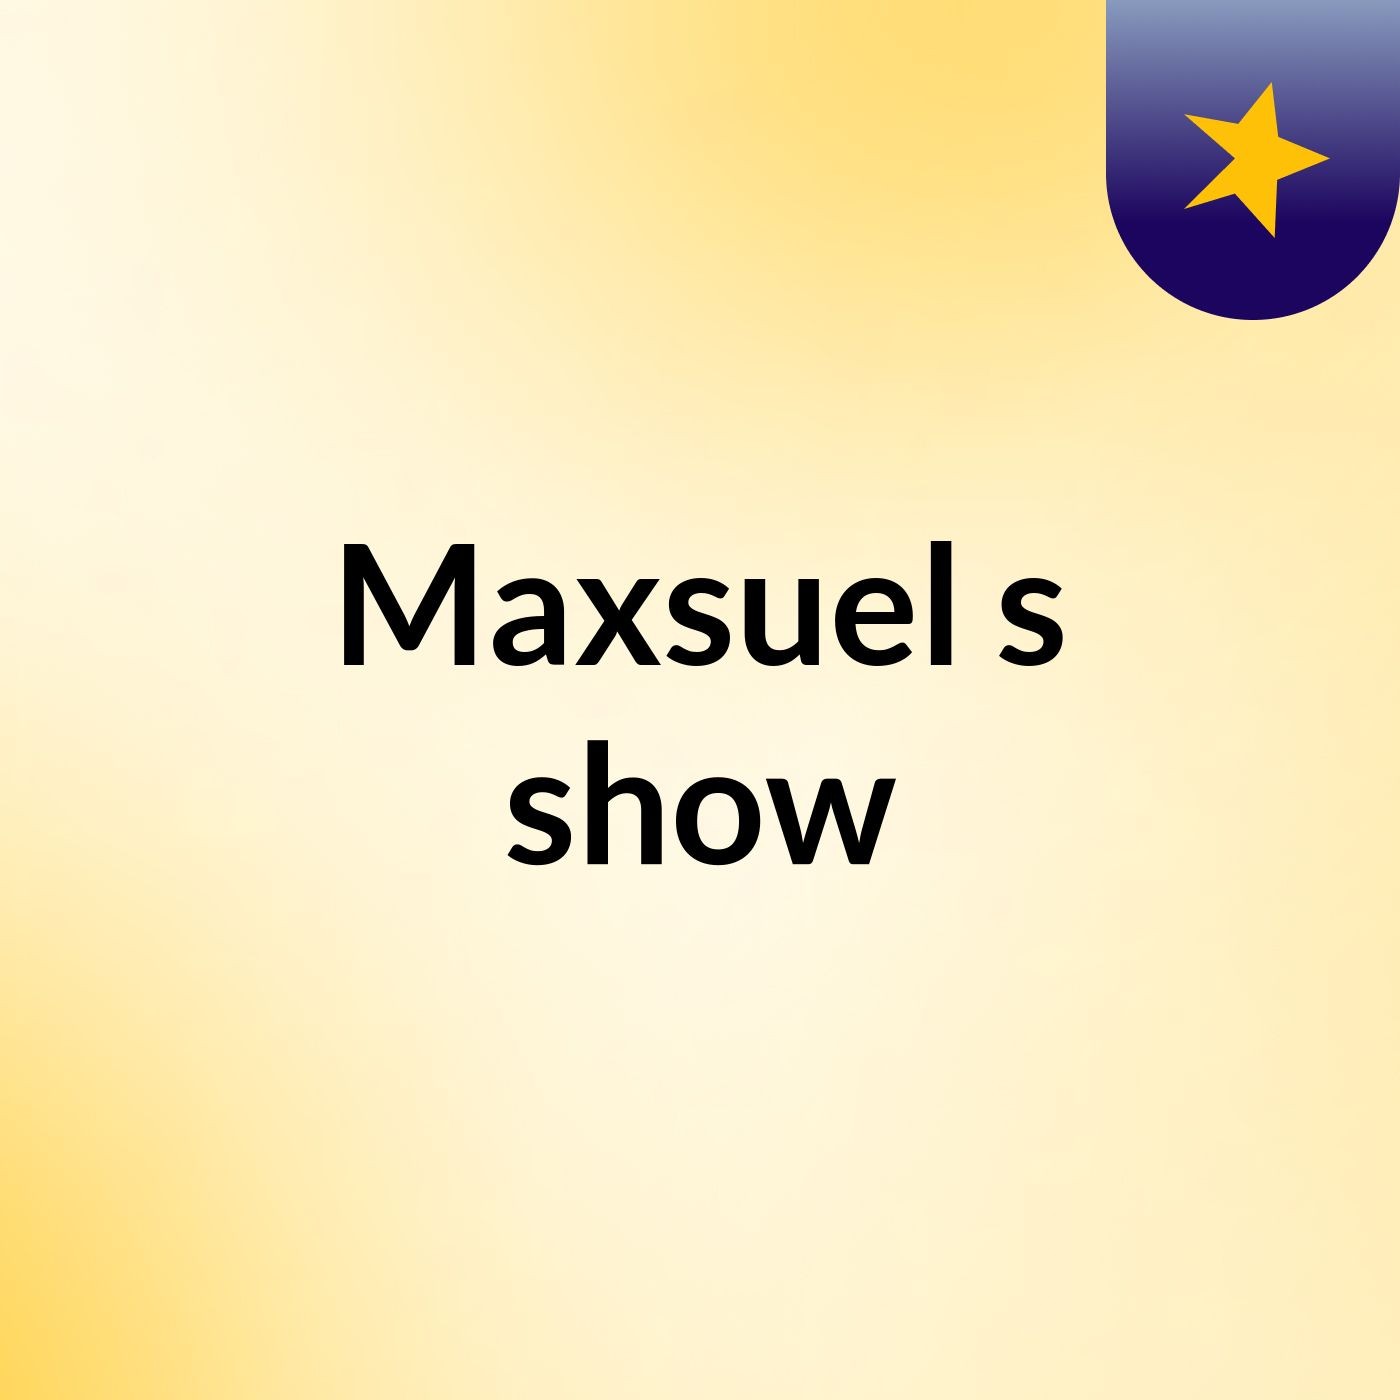 Maxsuel's show